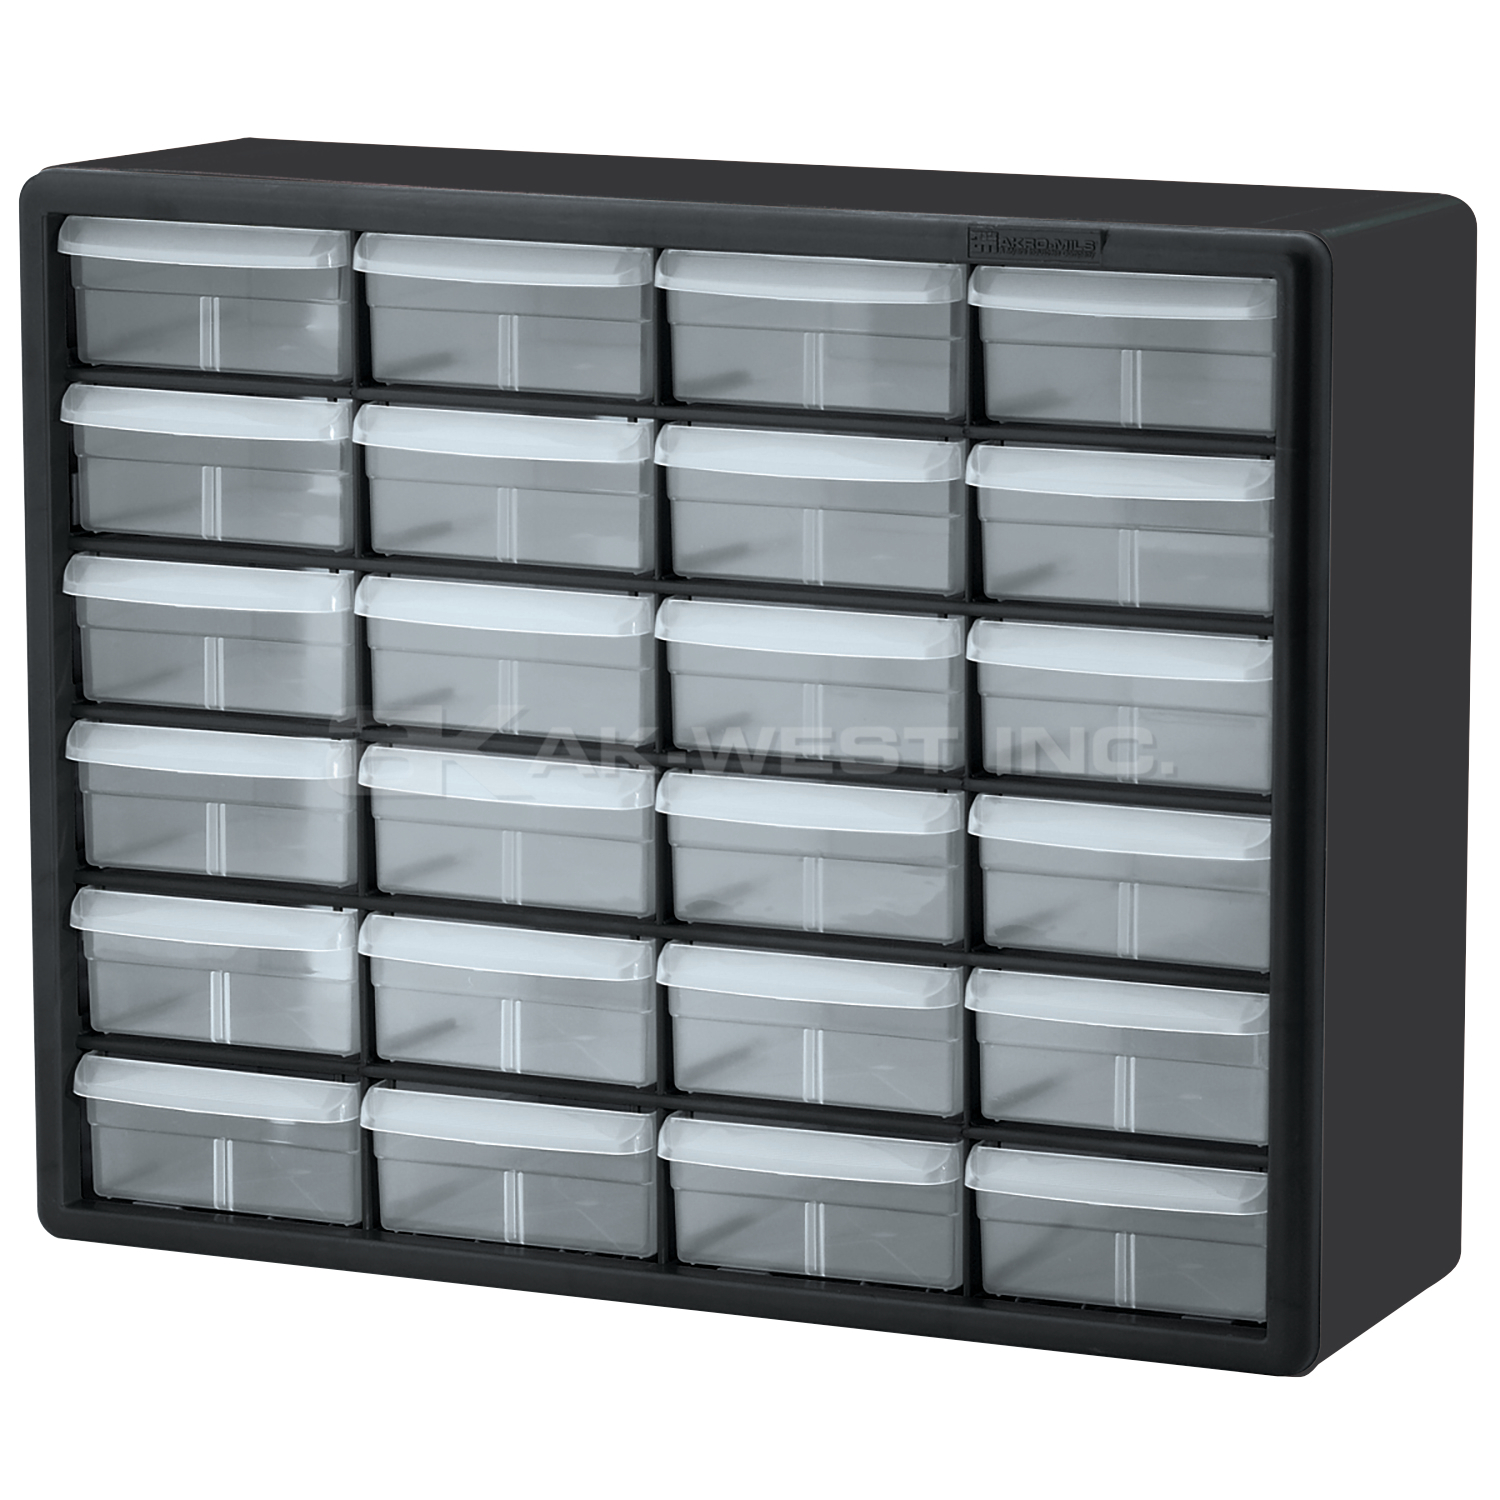 Black, 20" x 6-3/8" x 15-13/16" Plastic Storage Cabinet w/ 24 Drawers - Drawer Size 6" x 4-9/16" x 2-3/16"